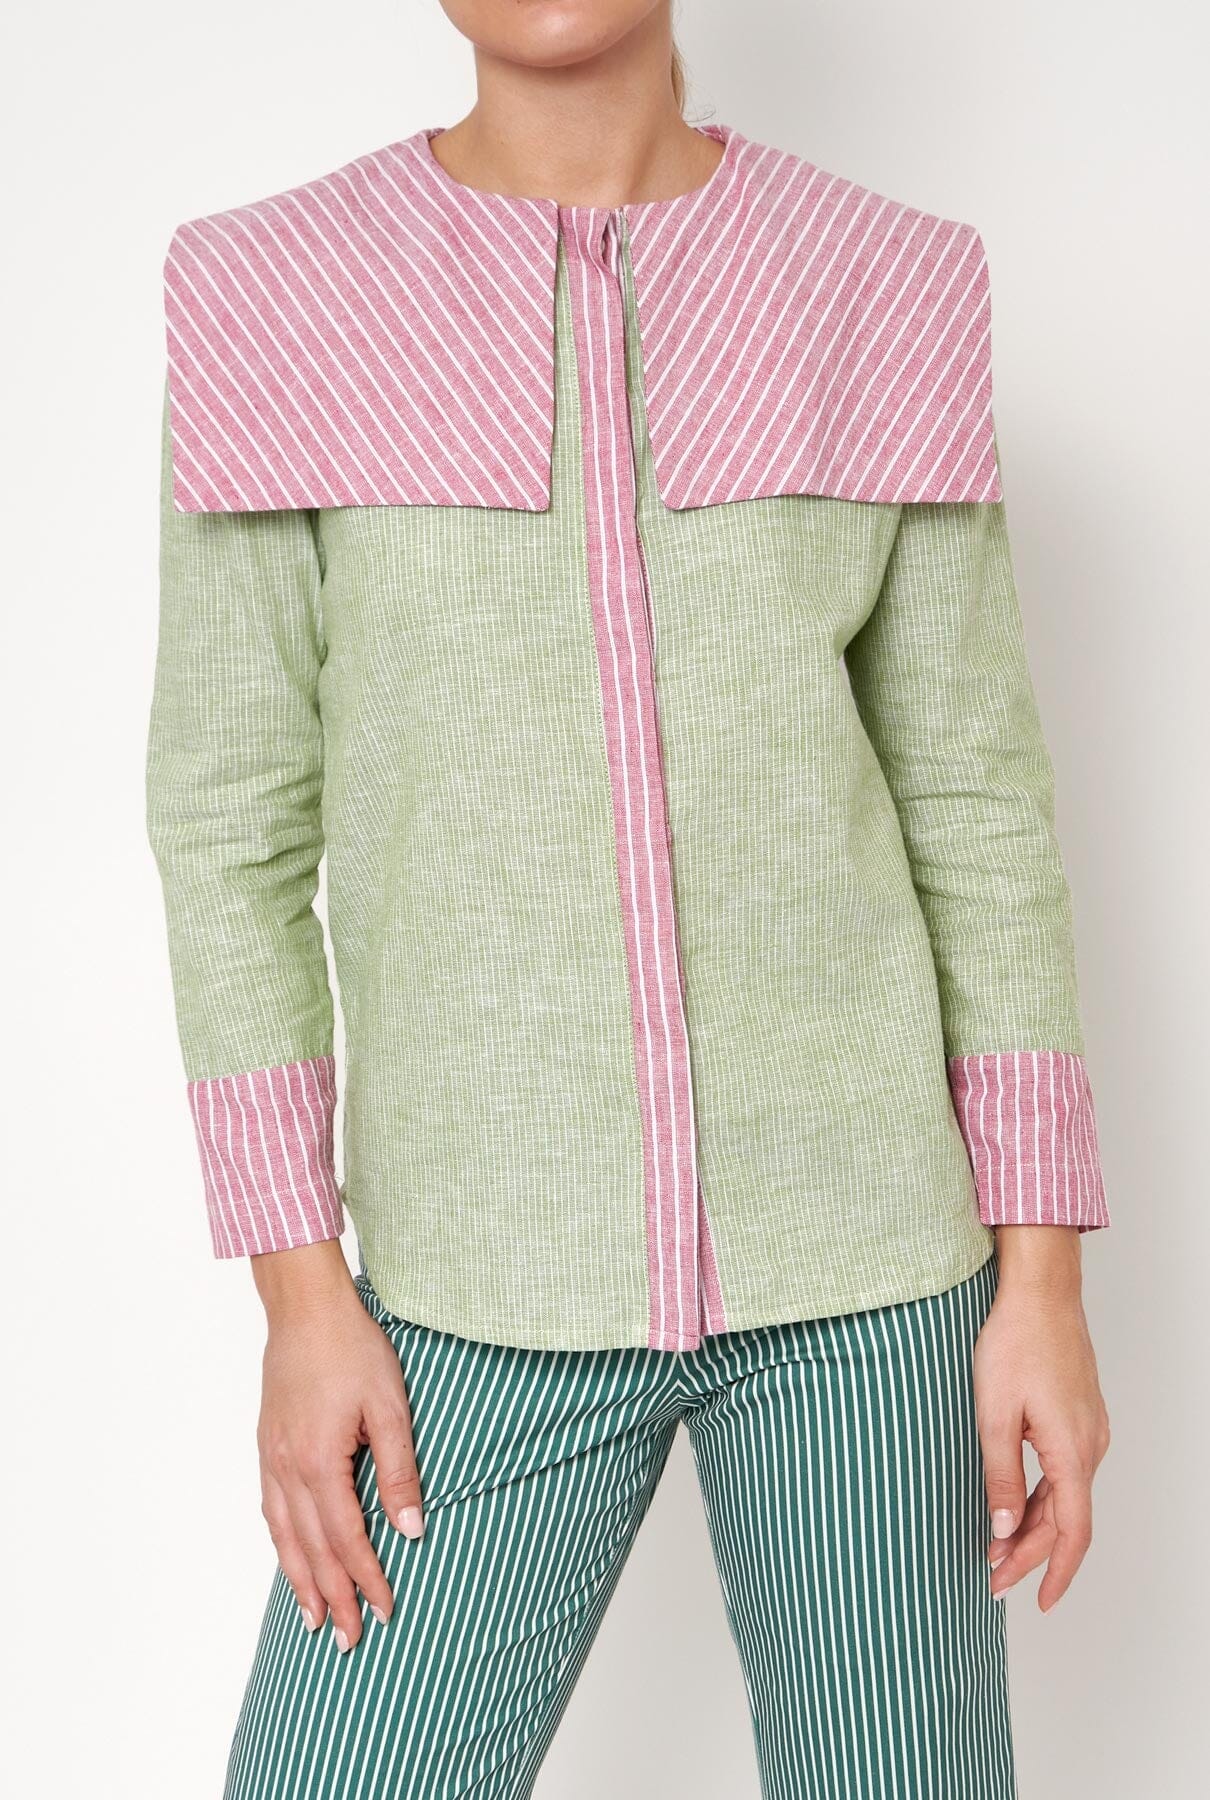 Camisa Loulou verde/rosa Shirts & blouses Vano Studio 